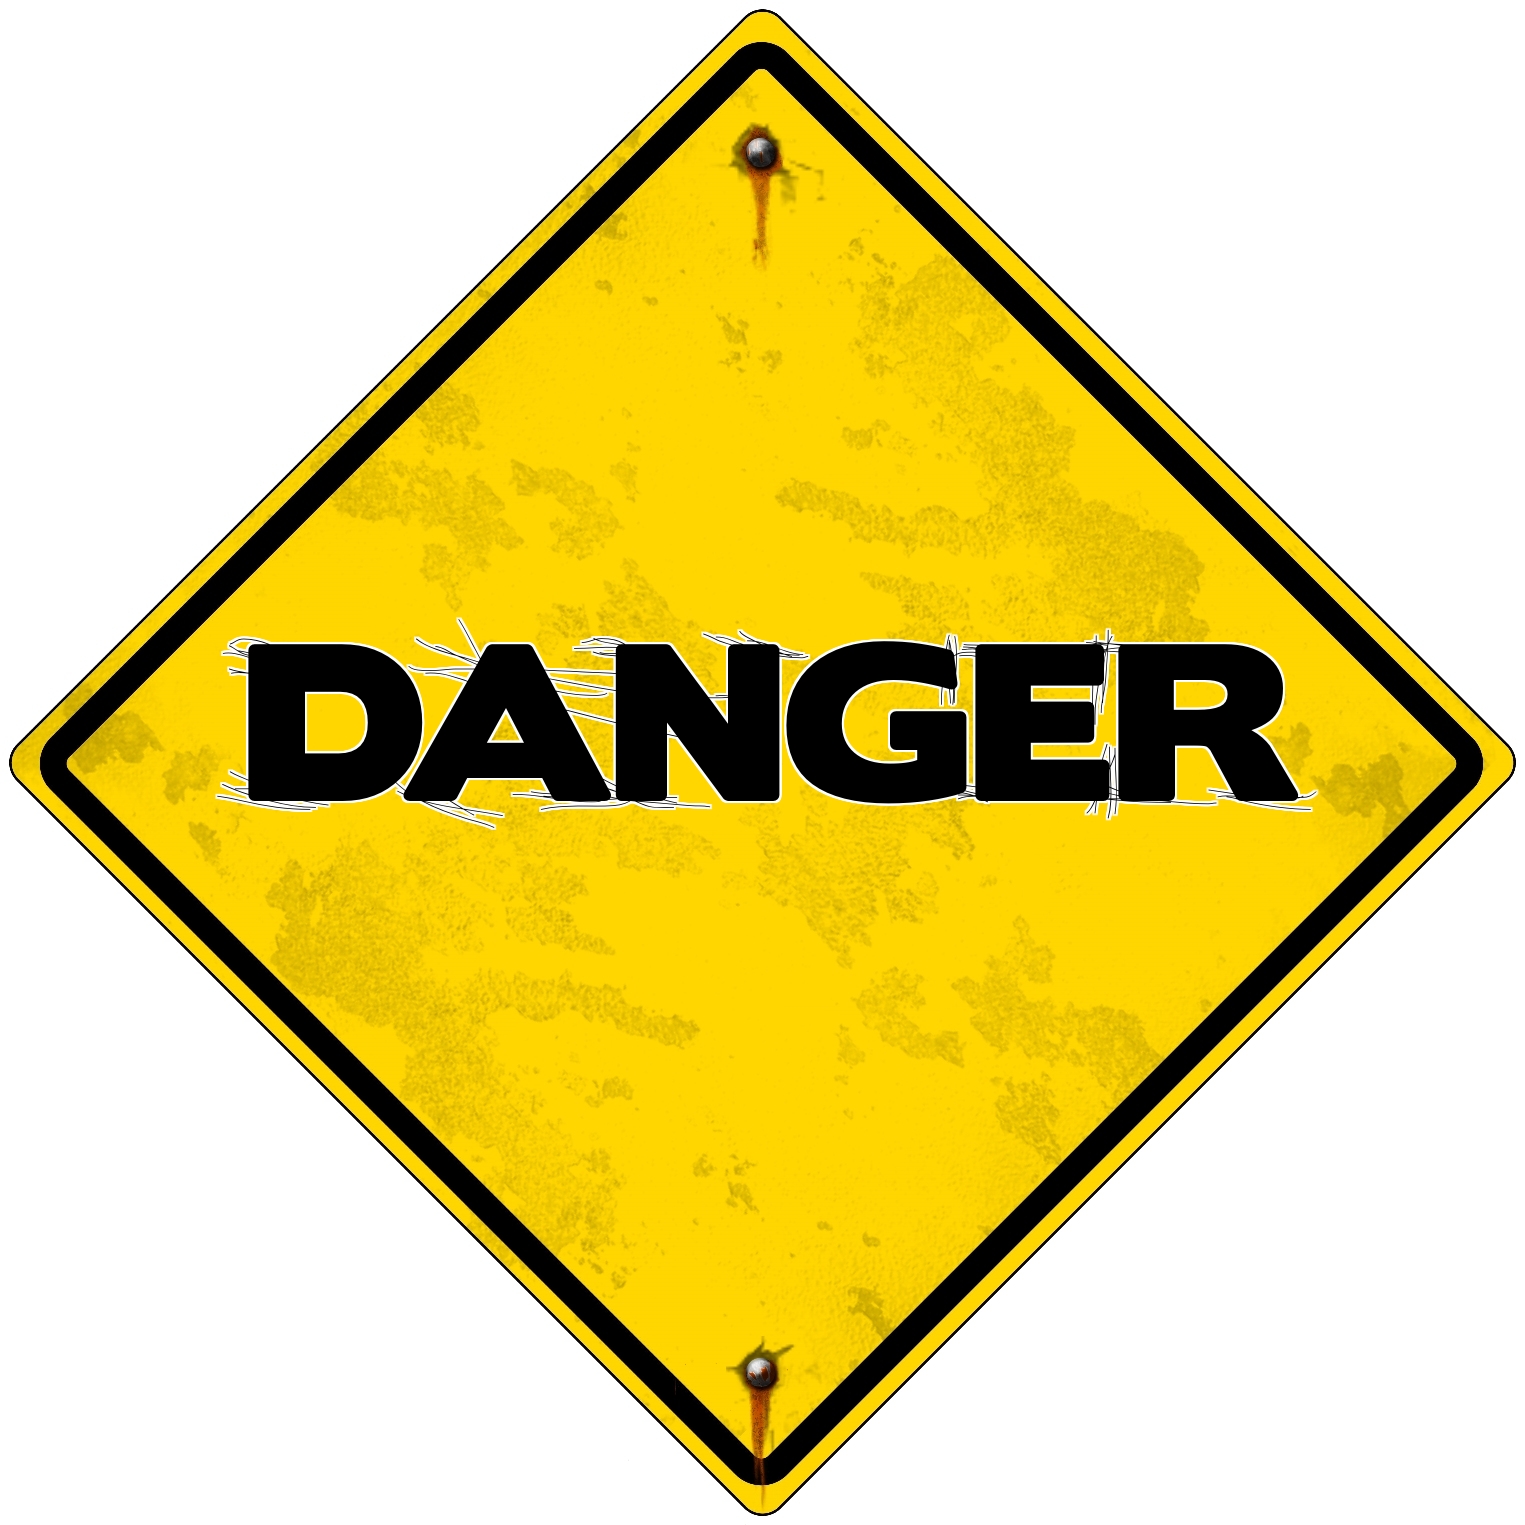 Danger [1950-1955]